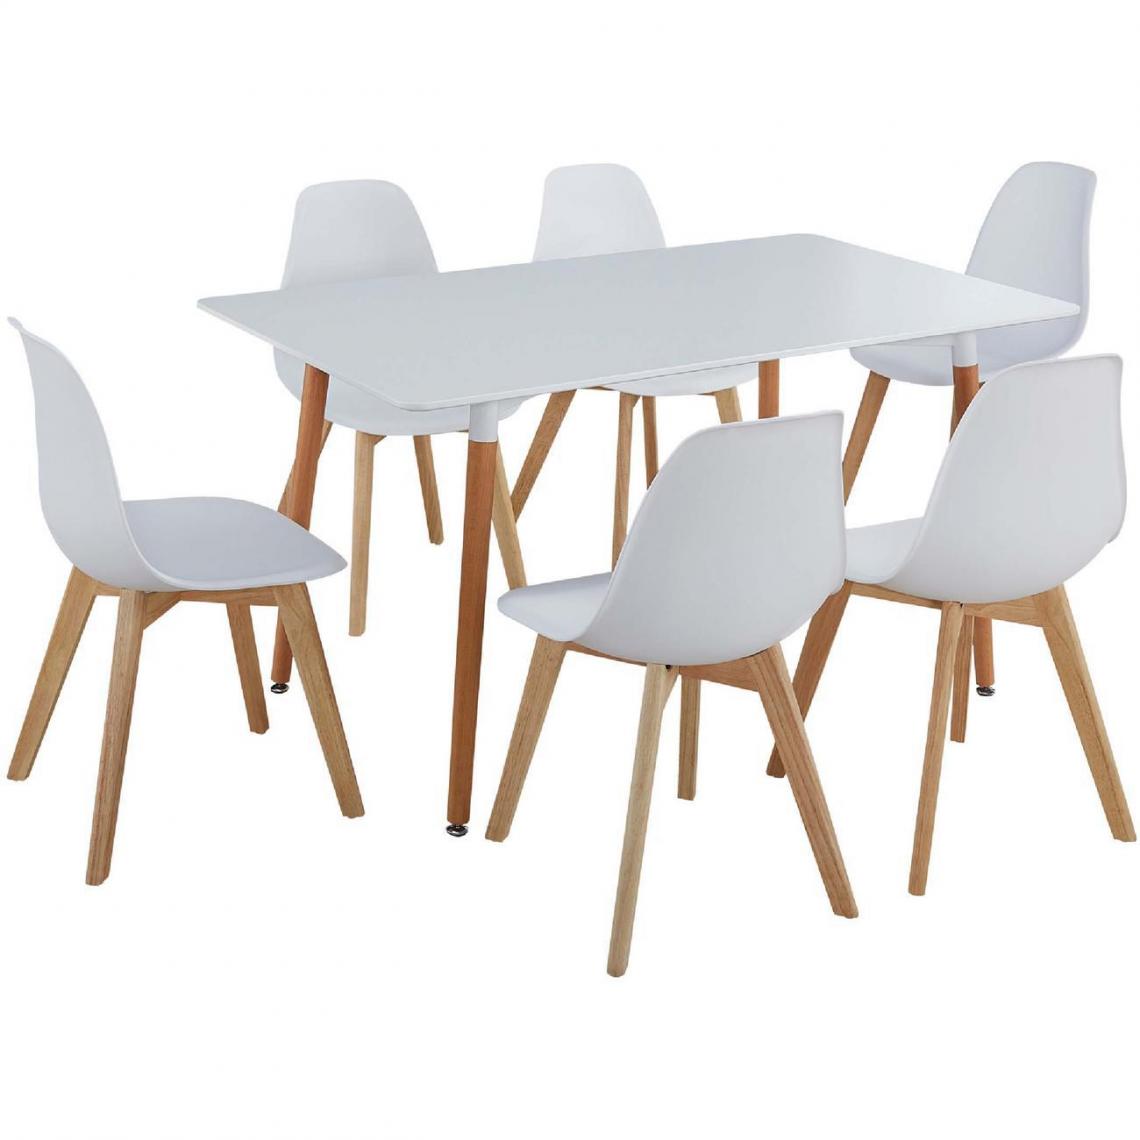 ATHM DESIGN - Ensemble table et 6 chaises Scandinave MARIO Blanc - plateau Bois 140 x 80 assise ABS pieds Bois - Tables à manger